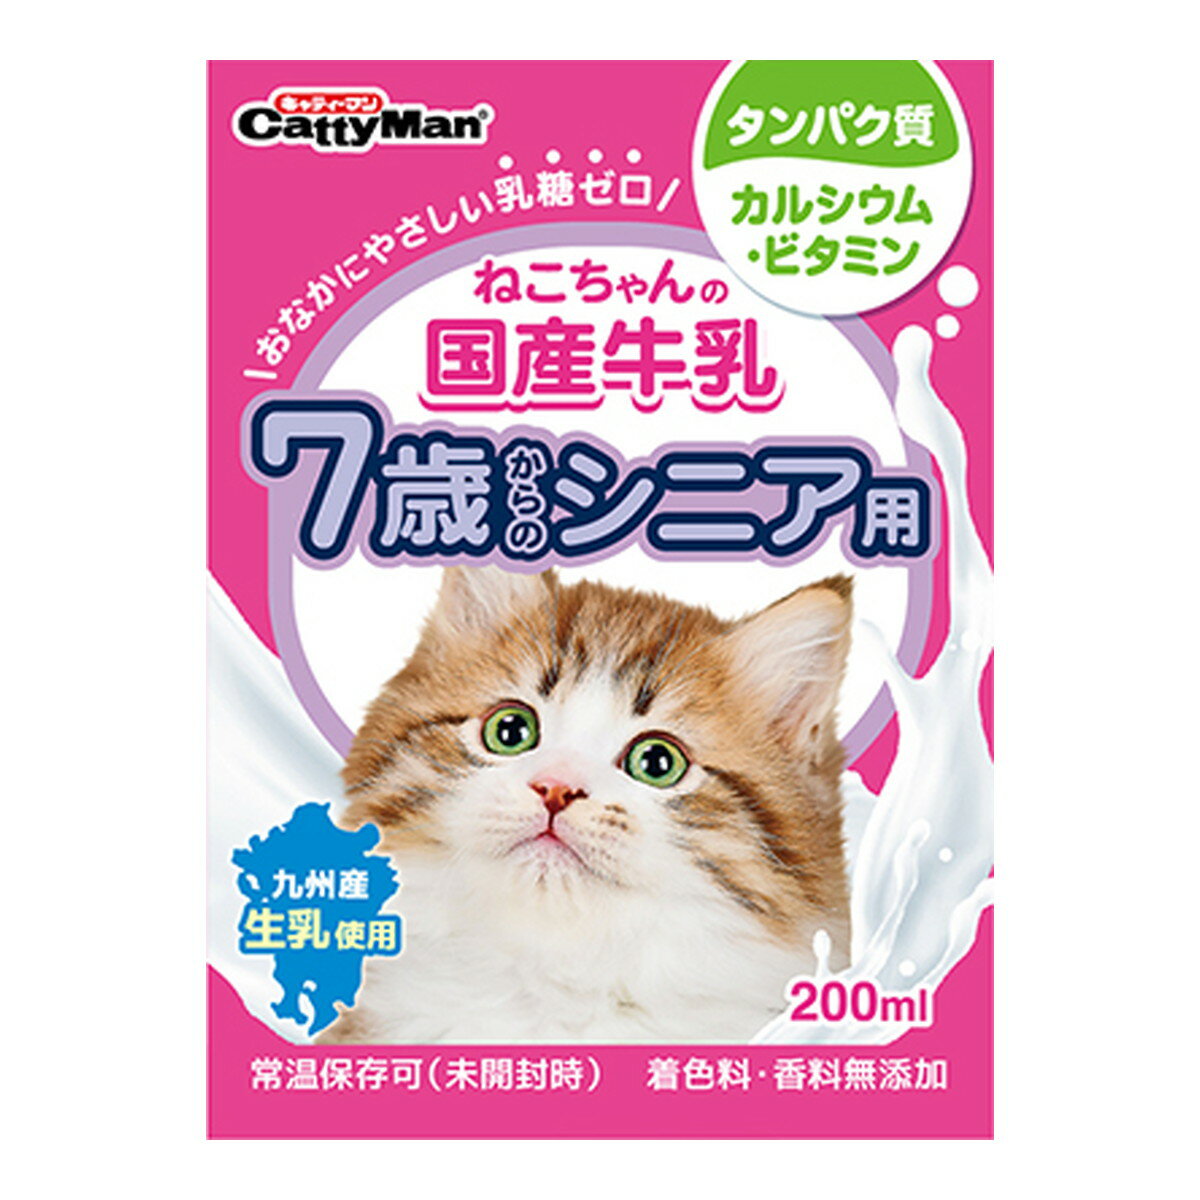 商品名：ドギーマンハヤシ キャティーマン ねこちゃんの 国産 牛乳 7歳からのシニア用 200mL内容量：200mlJANコード：4974926010428発売元、製造元、輸入元又は販売元：ドギーマンハヤシ原産国：日本商品番号：101-4974926010428商品説明乳糖ゼロ、愛猫専用の牛乳。7歳からのシニア用。グルコサミン、コンドロイチン配合。九州産生乳使用。国産。おなかにやさしい乳糖ゼロ。製造過程で乳糖を完全分解。九州産生乳をそのまま国内工場で製造。安心できるおいしさ。着色料や香料は使用せず、生乳の旨さを最大限引き出している。関節の健康維持にグルコサミン、コンドロイチン配合。脱脂粉乳で成分調整した低脂肪タイプ。タウリン配合。広告文責：アットライフ株式会社TEL 050-3196-1510 ※商品パッケージは変更の場合あり。メーカー欠品または完売の際、キャンセルをお願いすることがあります。ご了承ください。